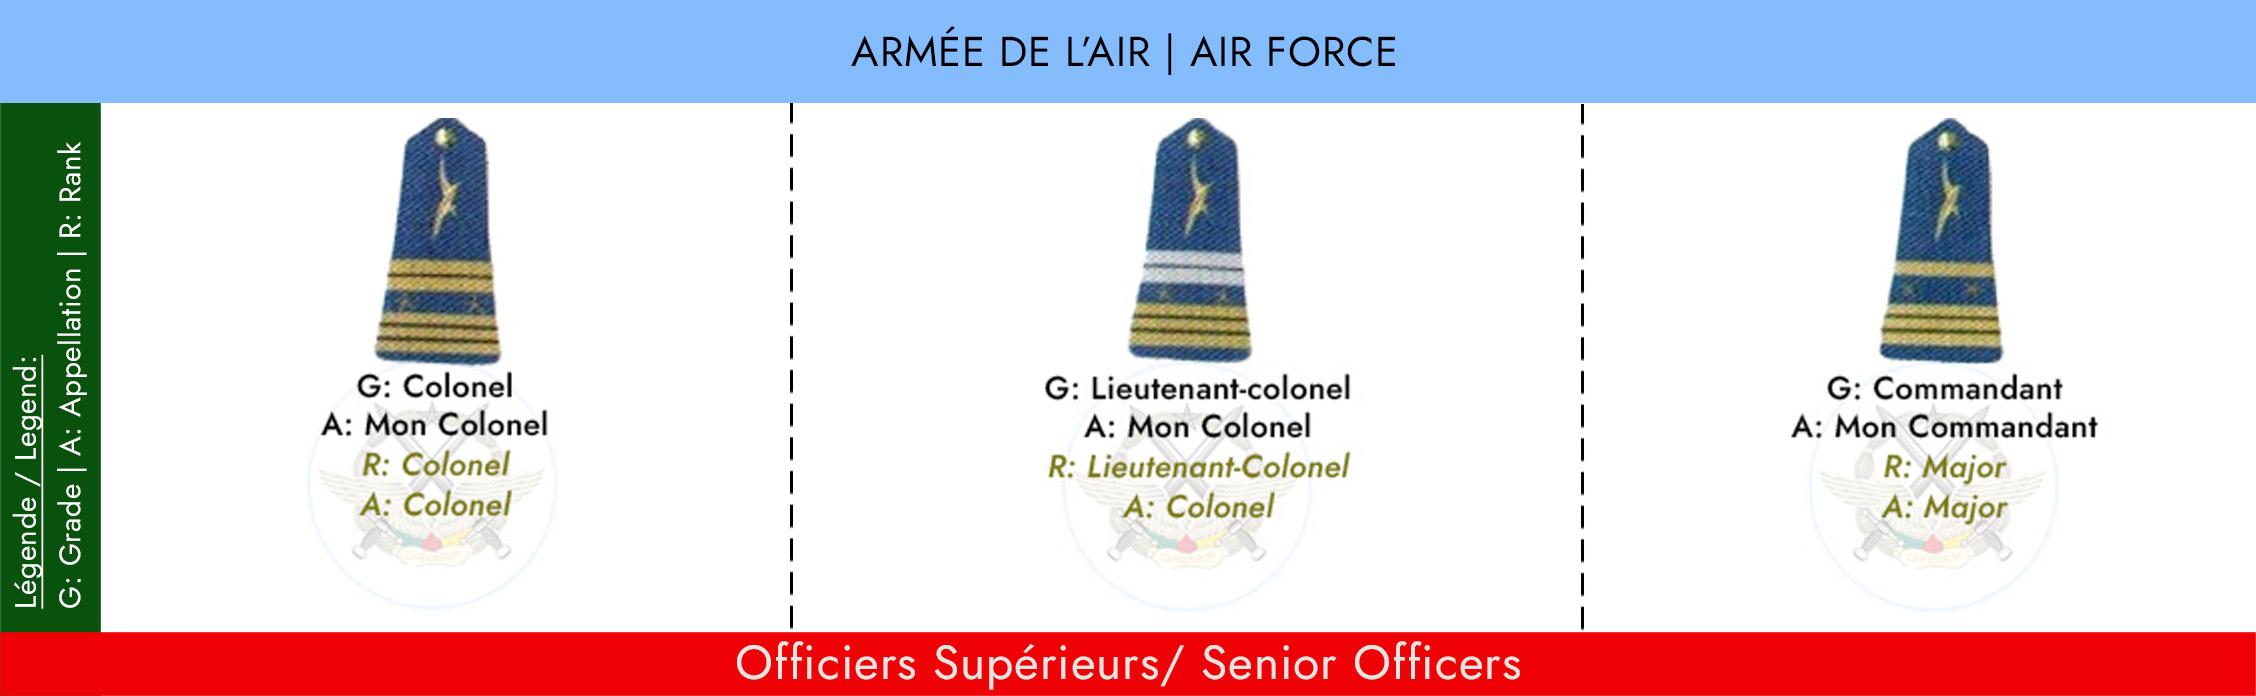 GRADES ET APPELLATIONS OFFICIER SUPERIEURS ARMEE DE L’AIR